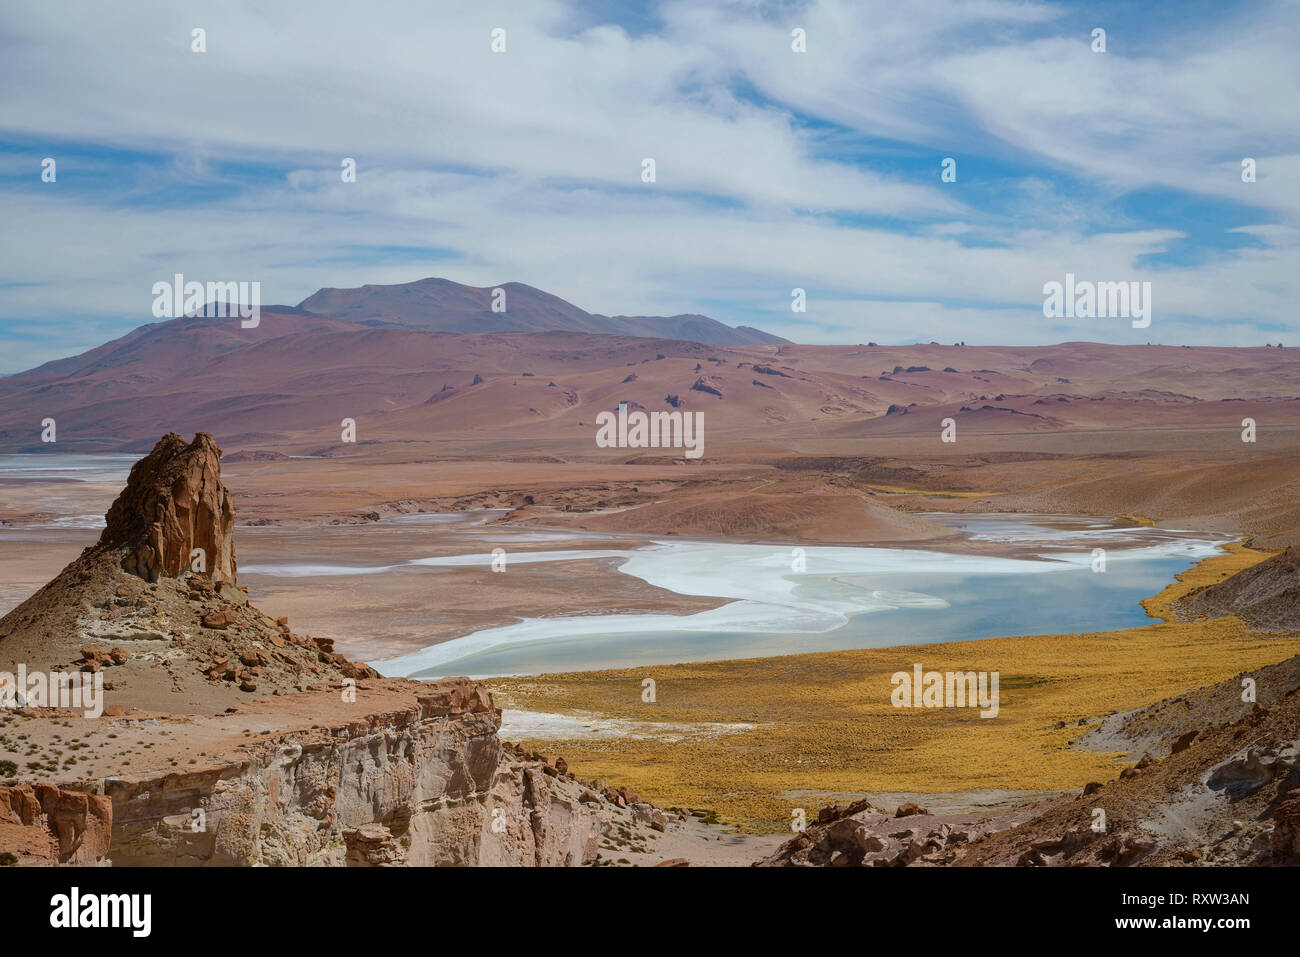 Vue de l'Altiplano et le lac de sel dans le désert d'Atacama, au Chili, près de la frontière avec l'Argentine, l'Amérique du Sud Banque D'Images